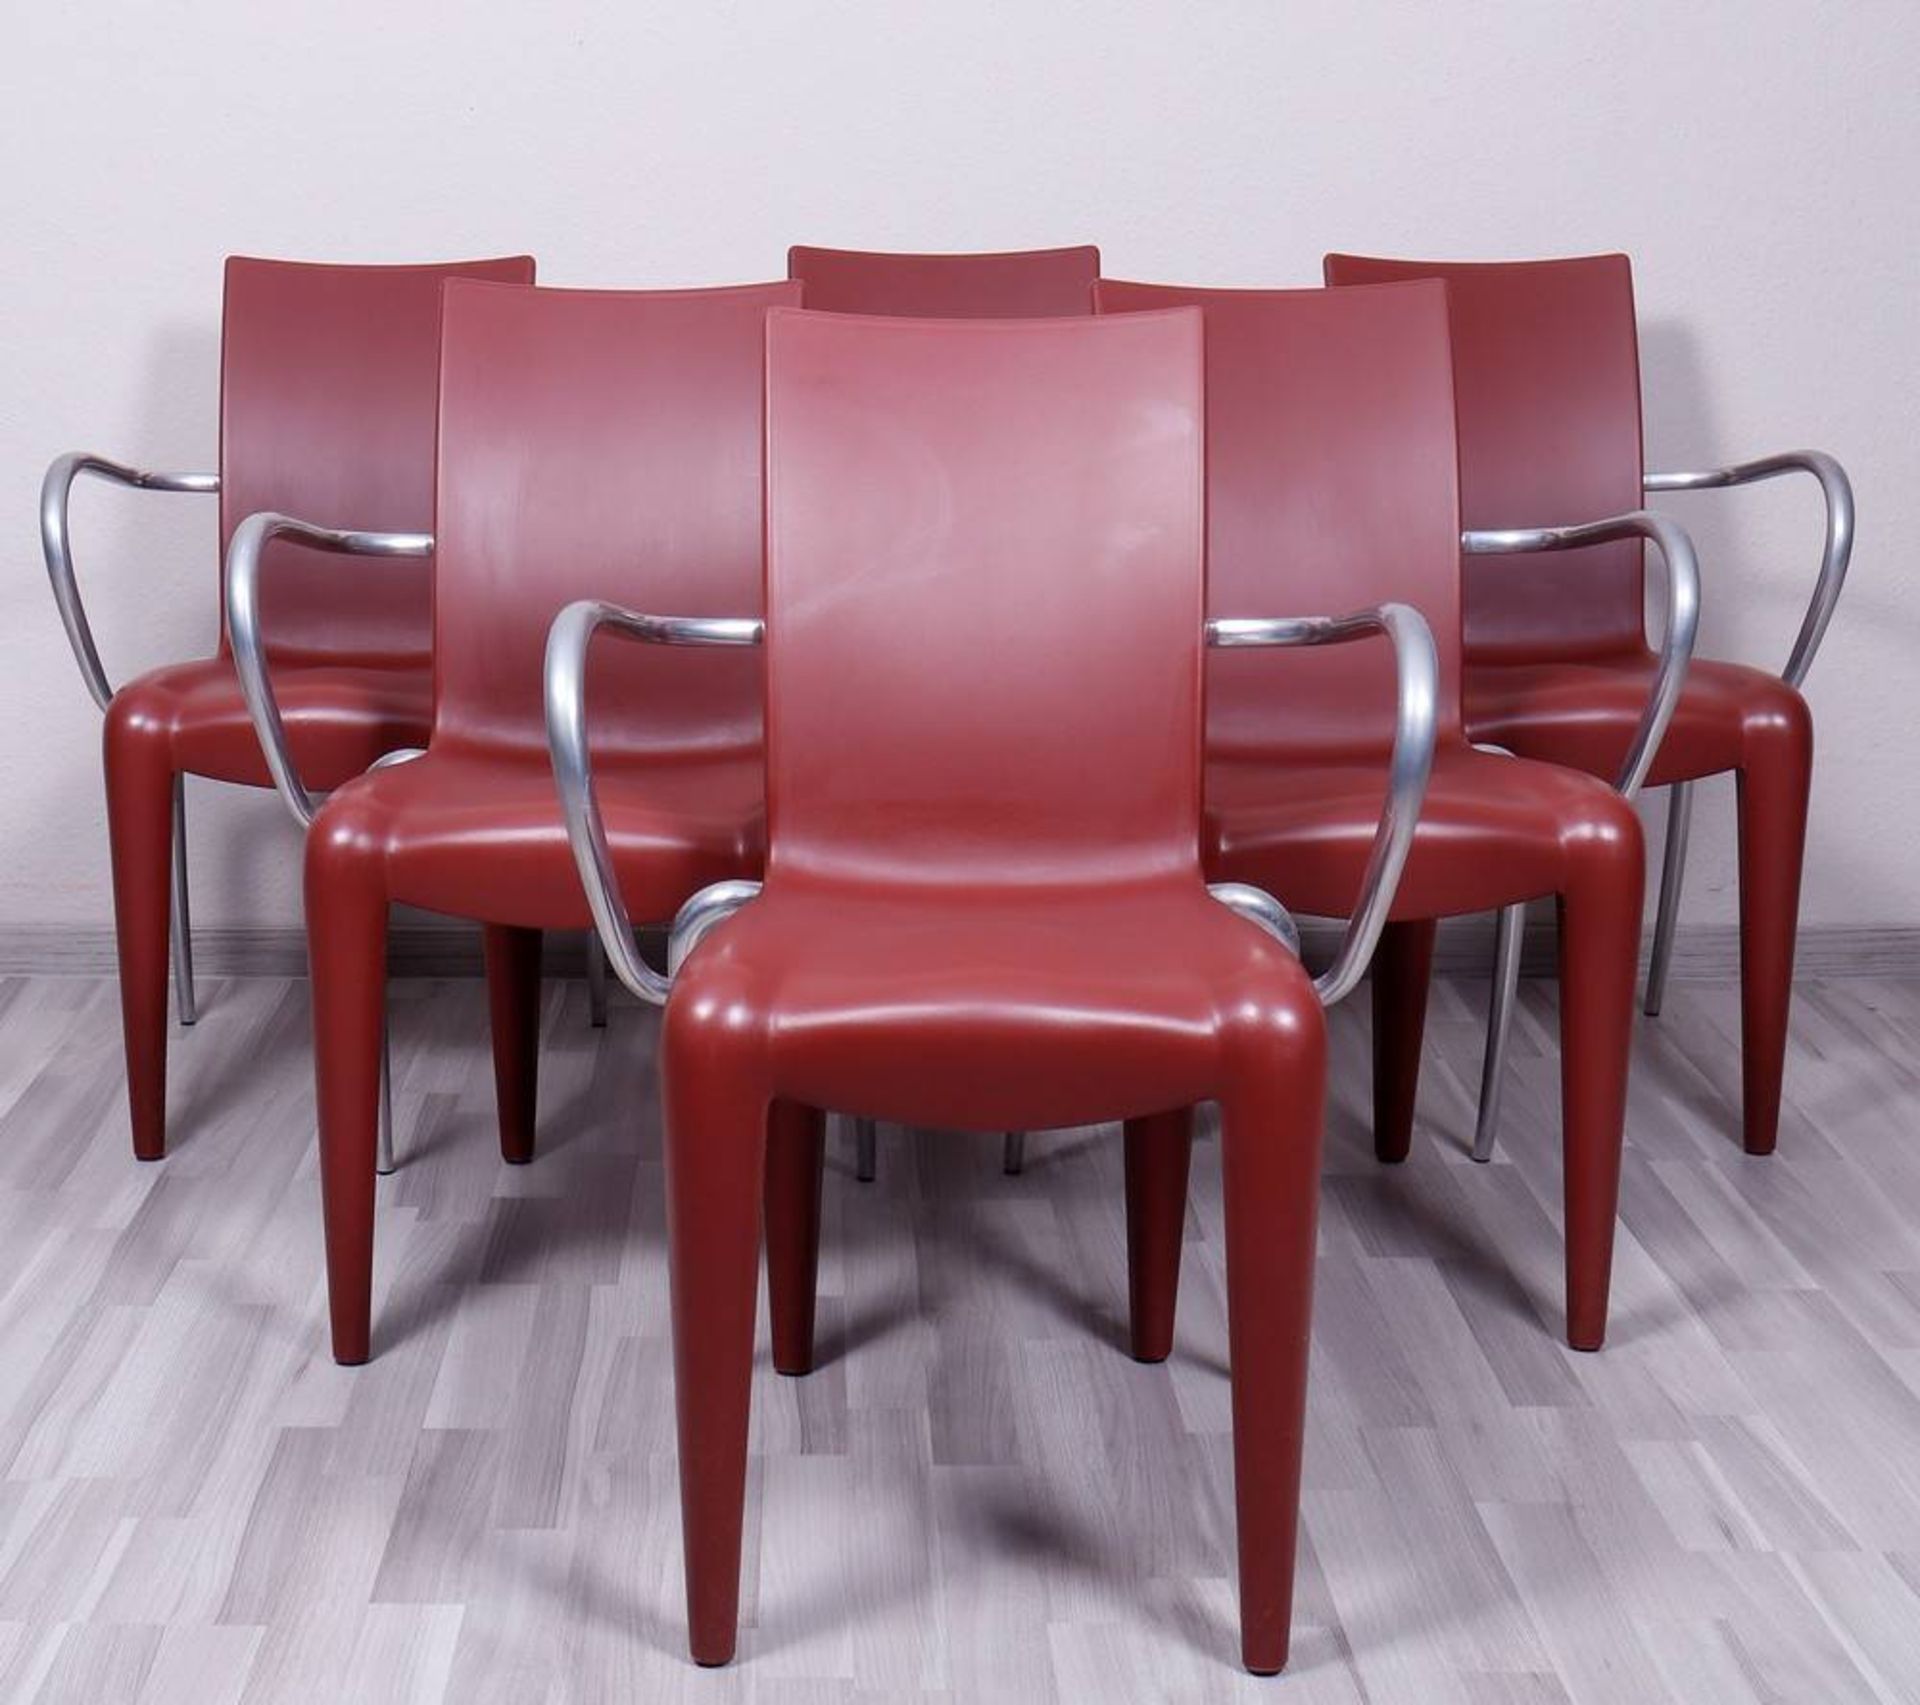 6 Armlehnstühle, Entwurf Philip Starck für Vitra, Modell "Louis 20"